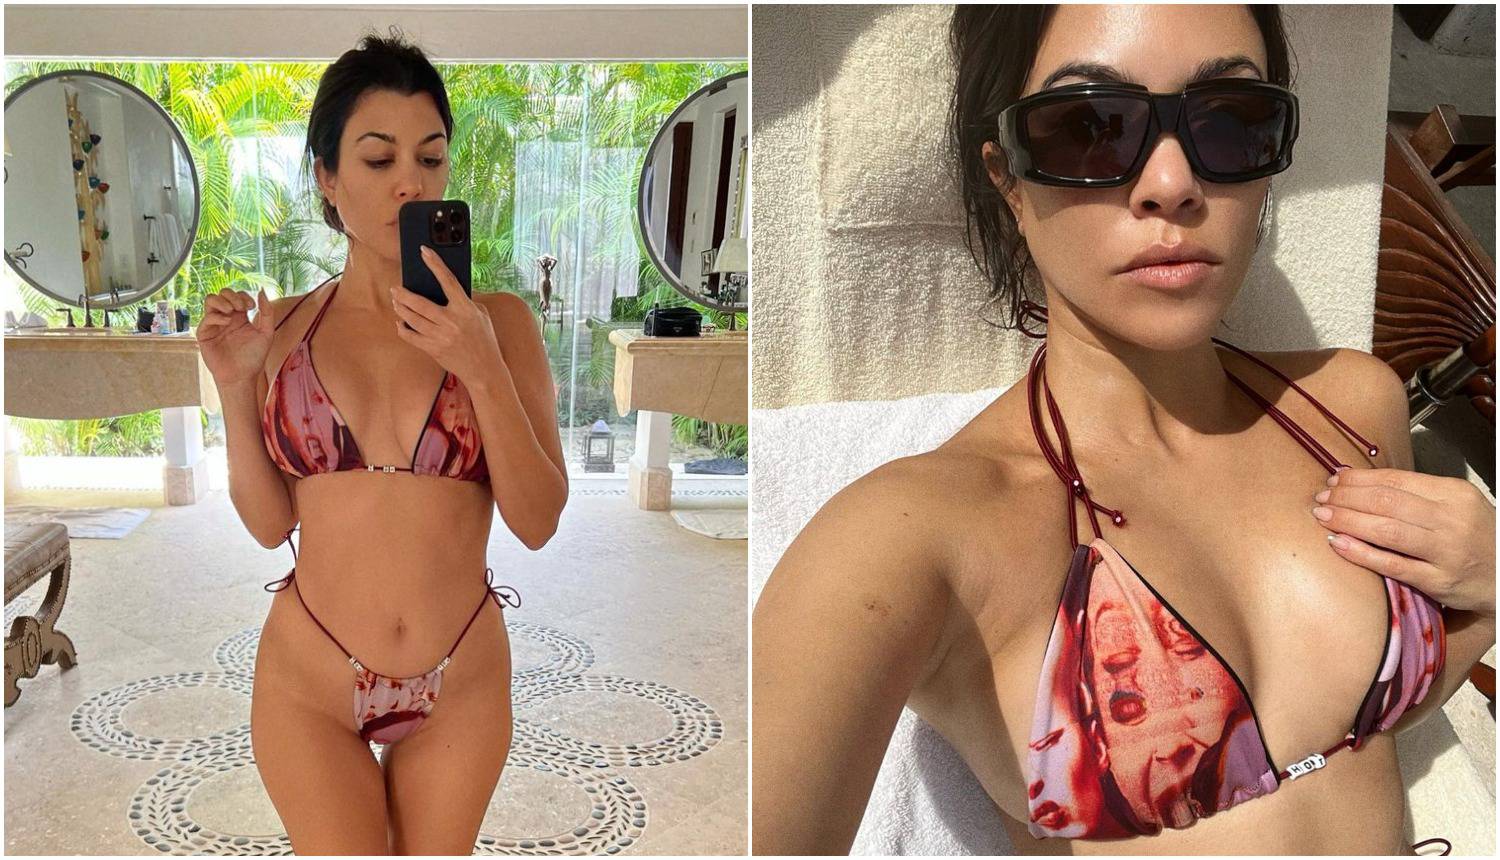 Najstarija sestra Kardashian otkrila zavidnu figuru u bikiniju